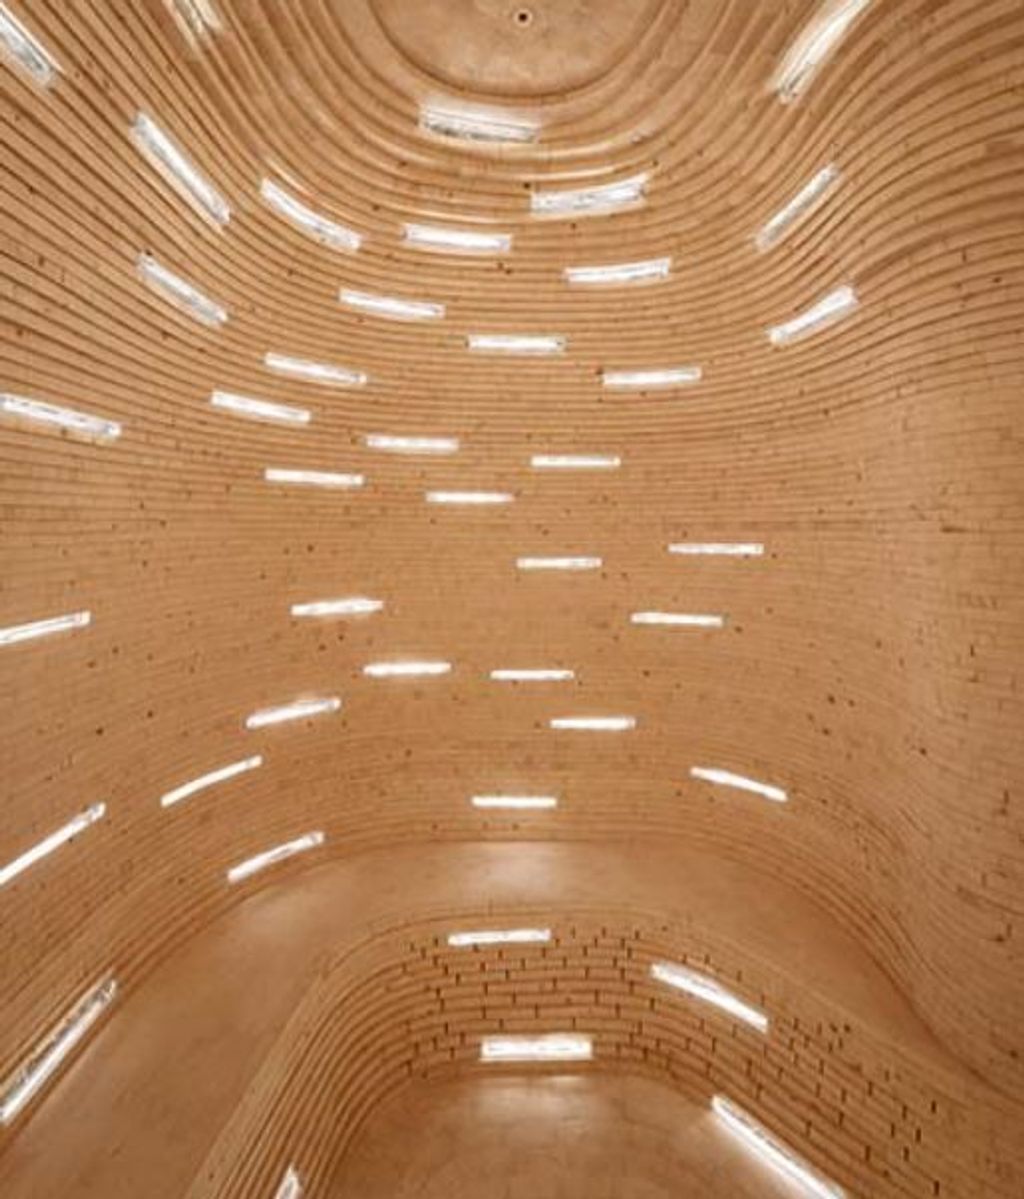 La Biblioteca del Futuro está hecha de madera